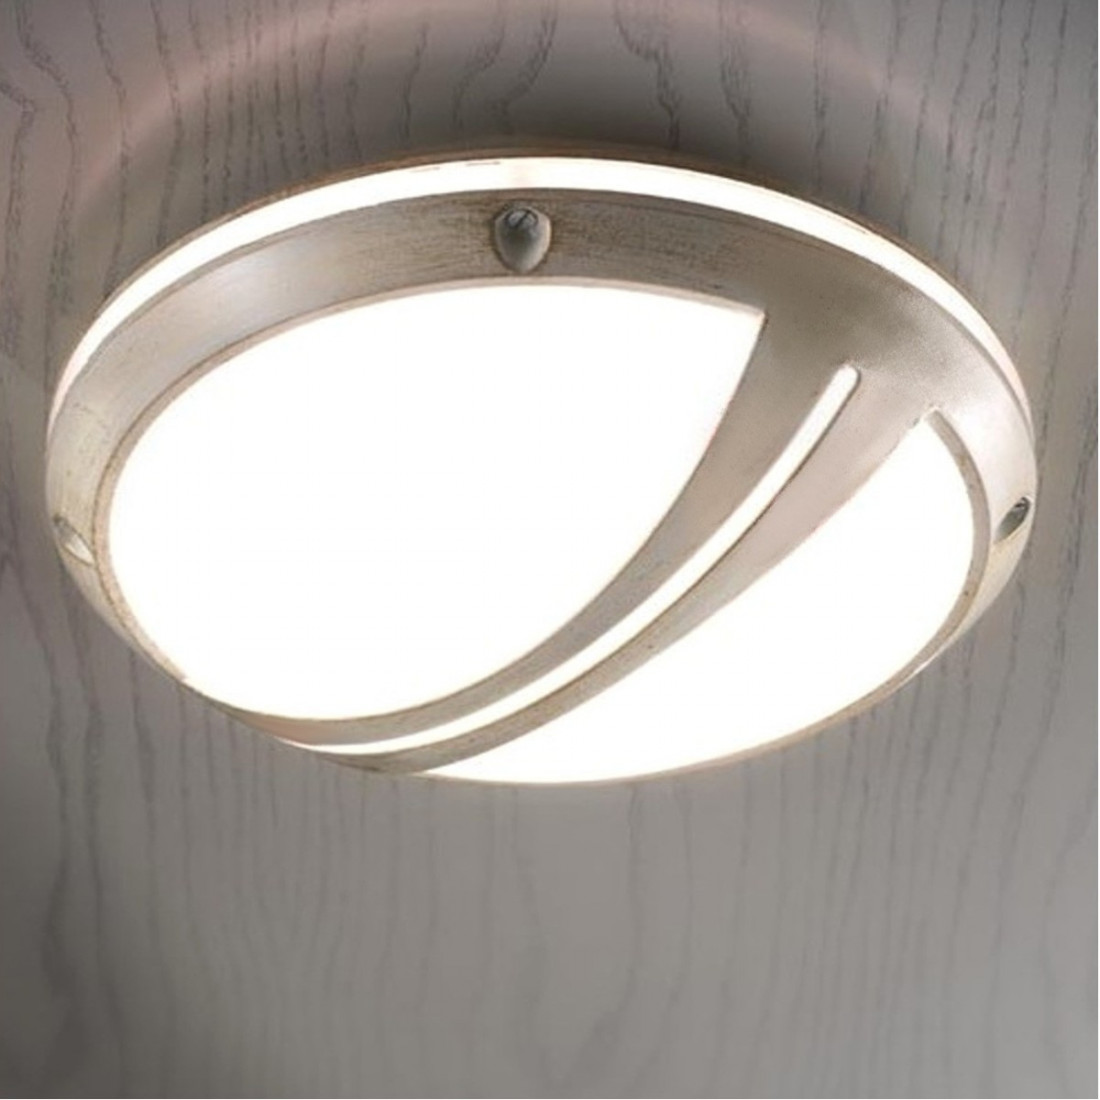 Plafoniera FE-BRINDISI A551 PL E27 LED 28CM alluminio decorato artigianale lampada soffitto classica tonda esterno IP44